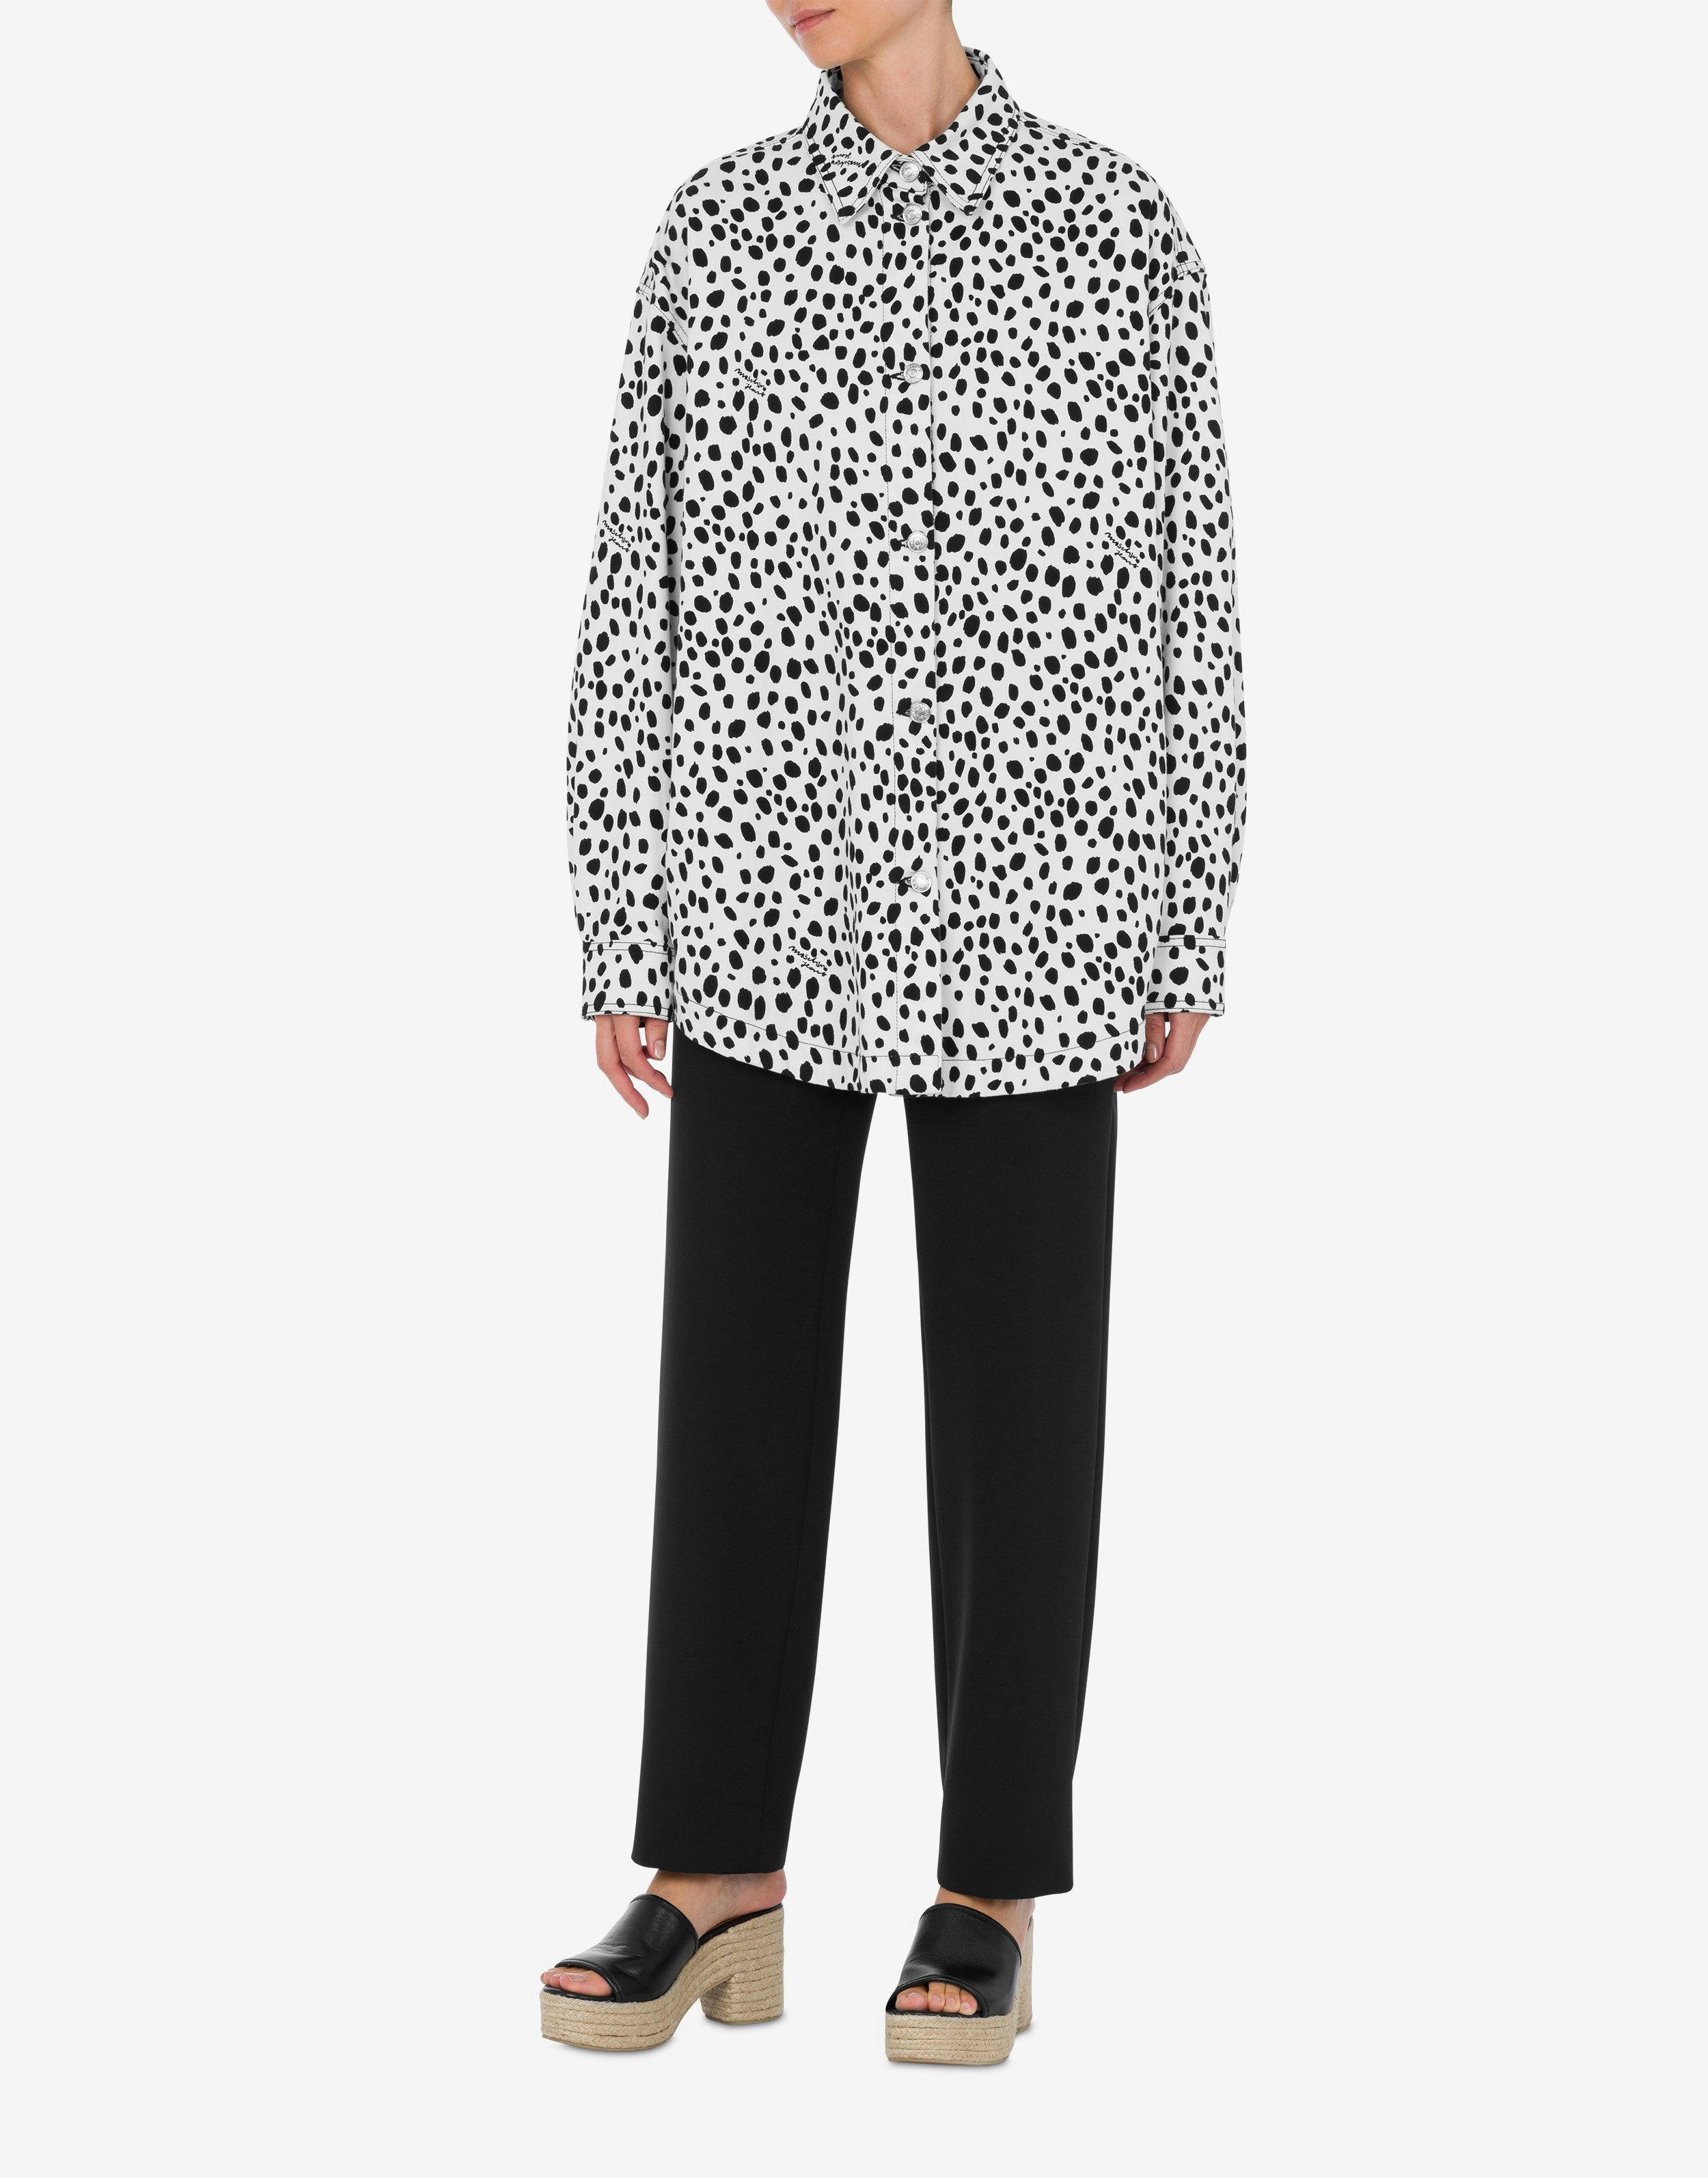 Leopard Print shirt jacket